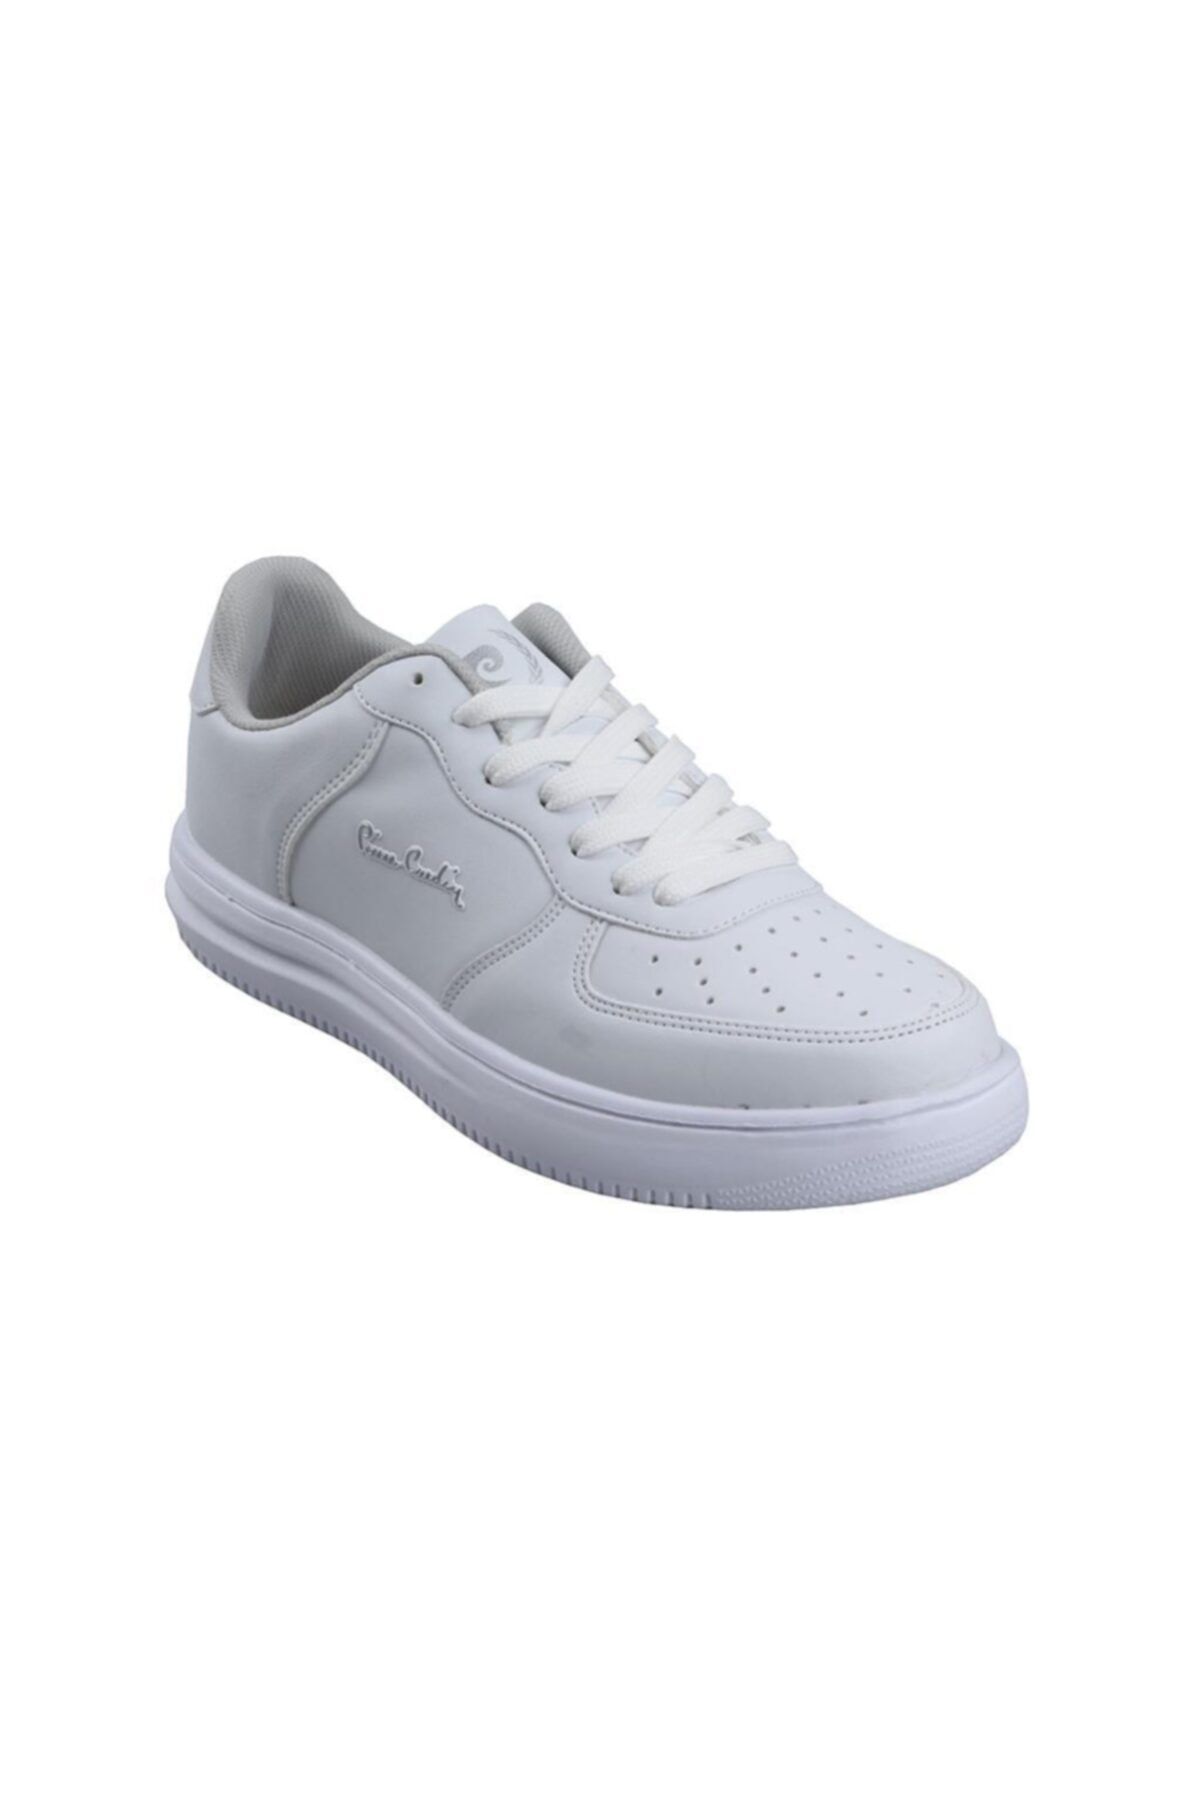 Pierre Cardin Pc-10148 Erkek-kız Çocuk Beyaz Sneaker Spor Ayakkabı